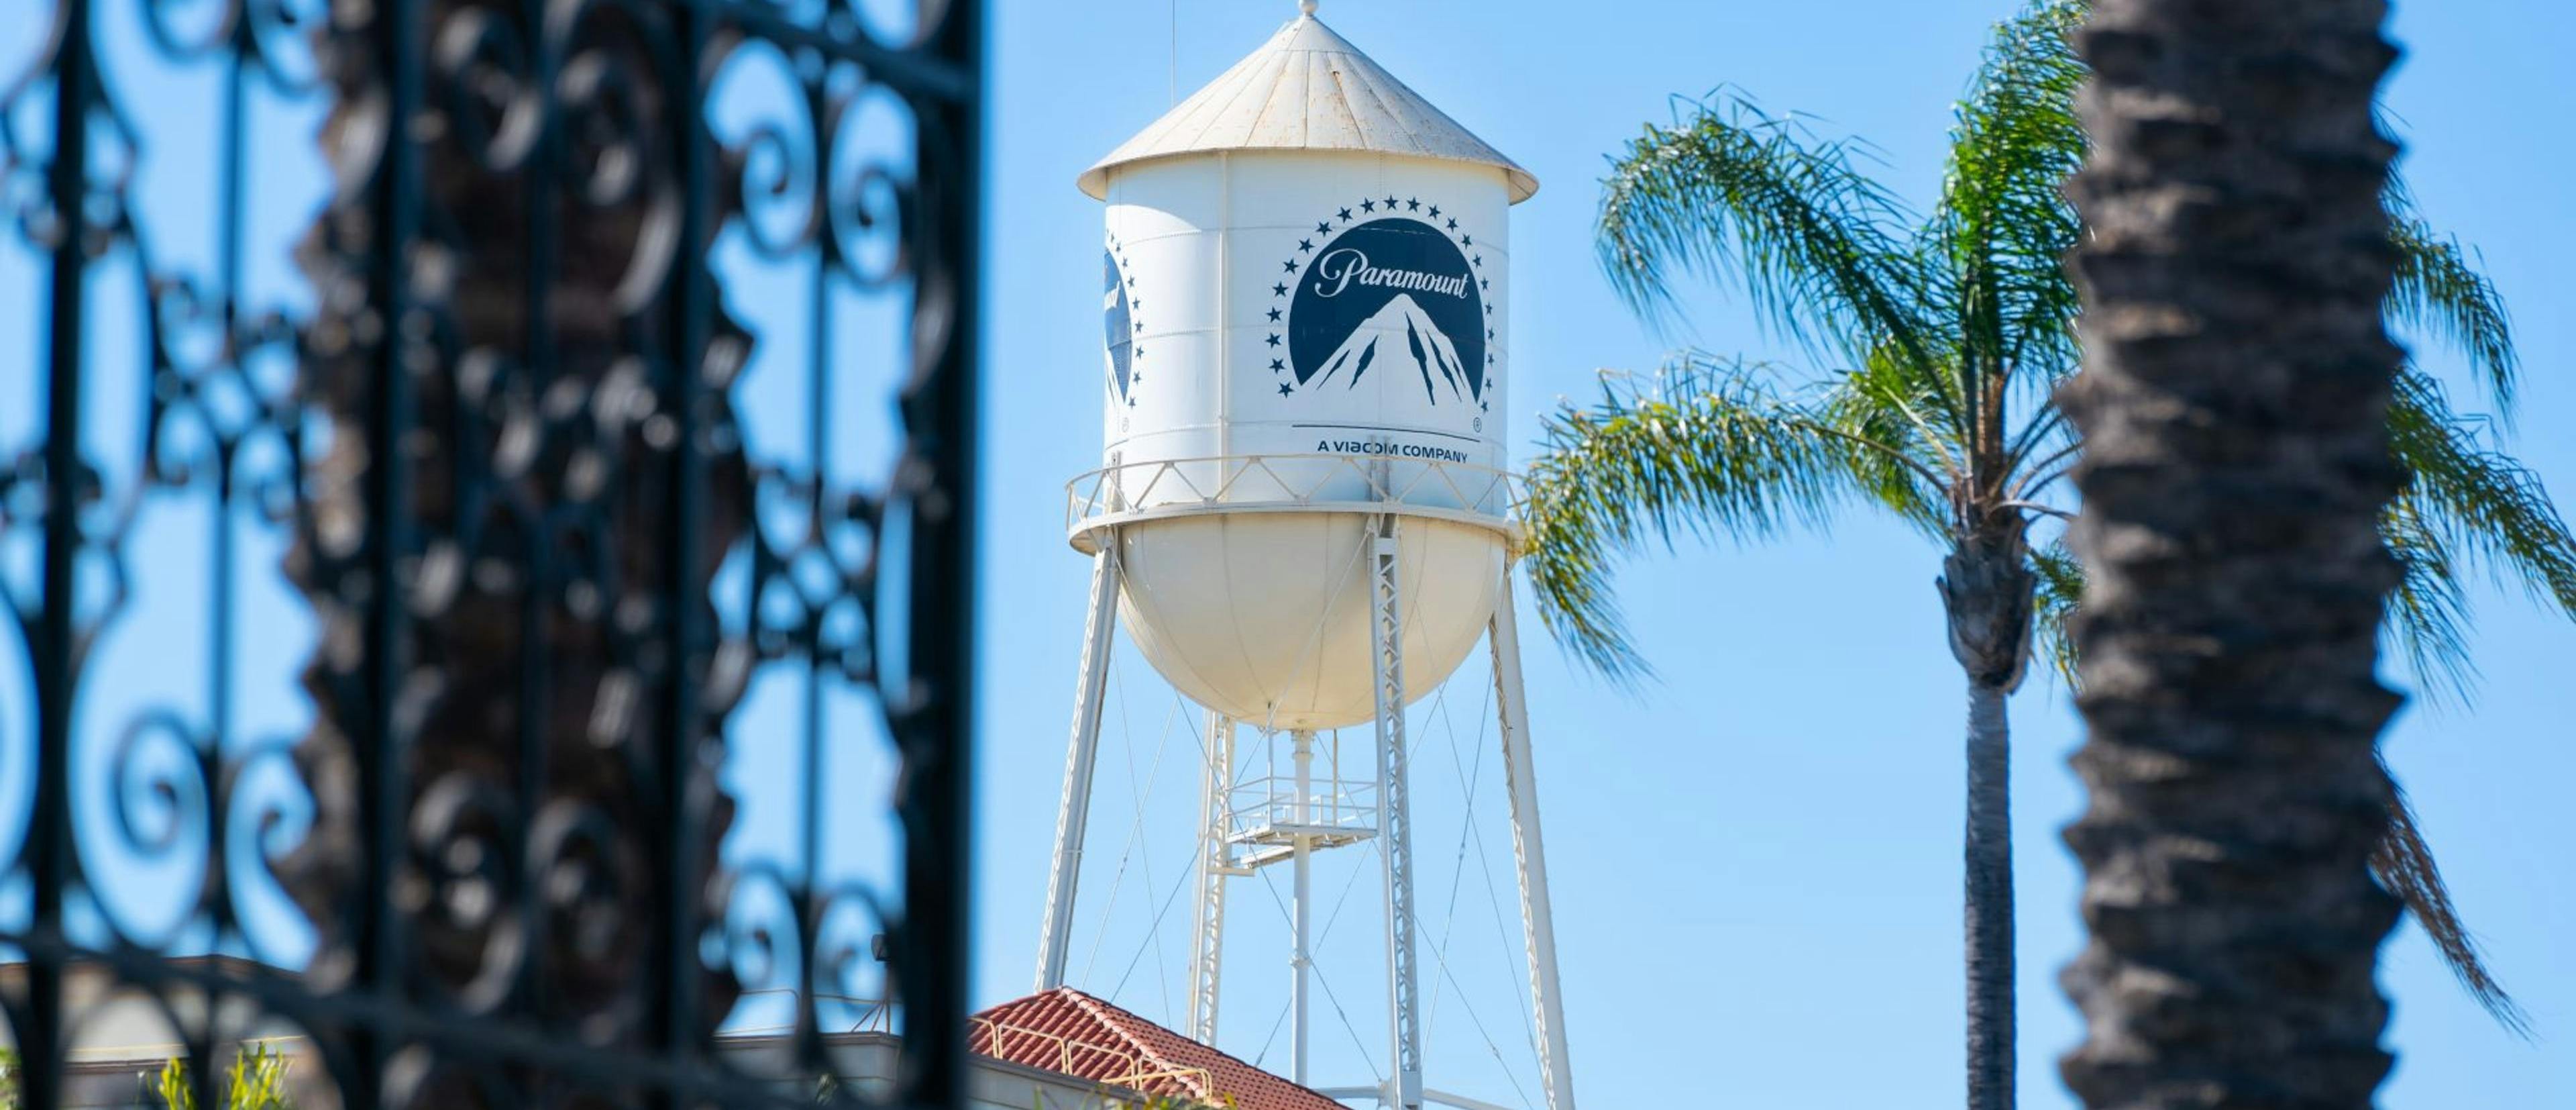 El paradigmático tanque de agua de Paramount, en Los Ángeles, en una imagen de archivo